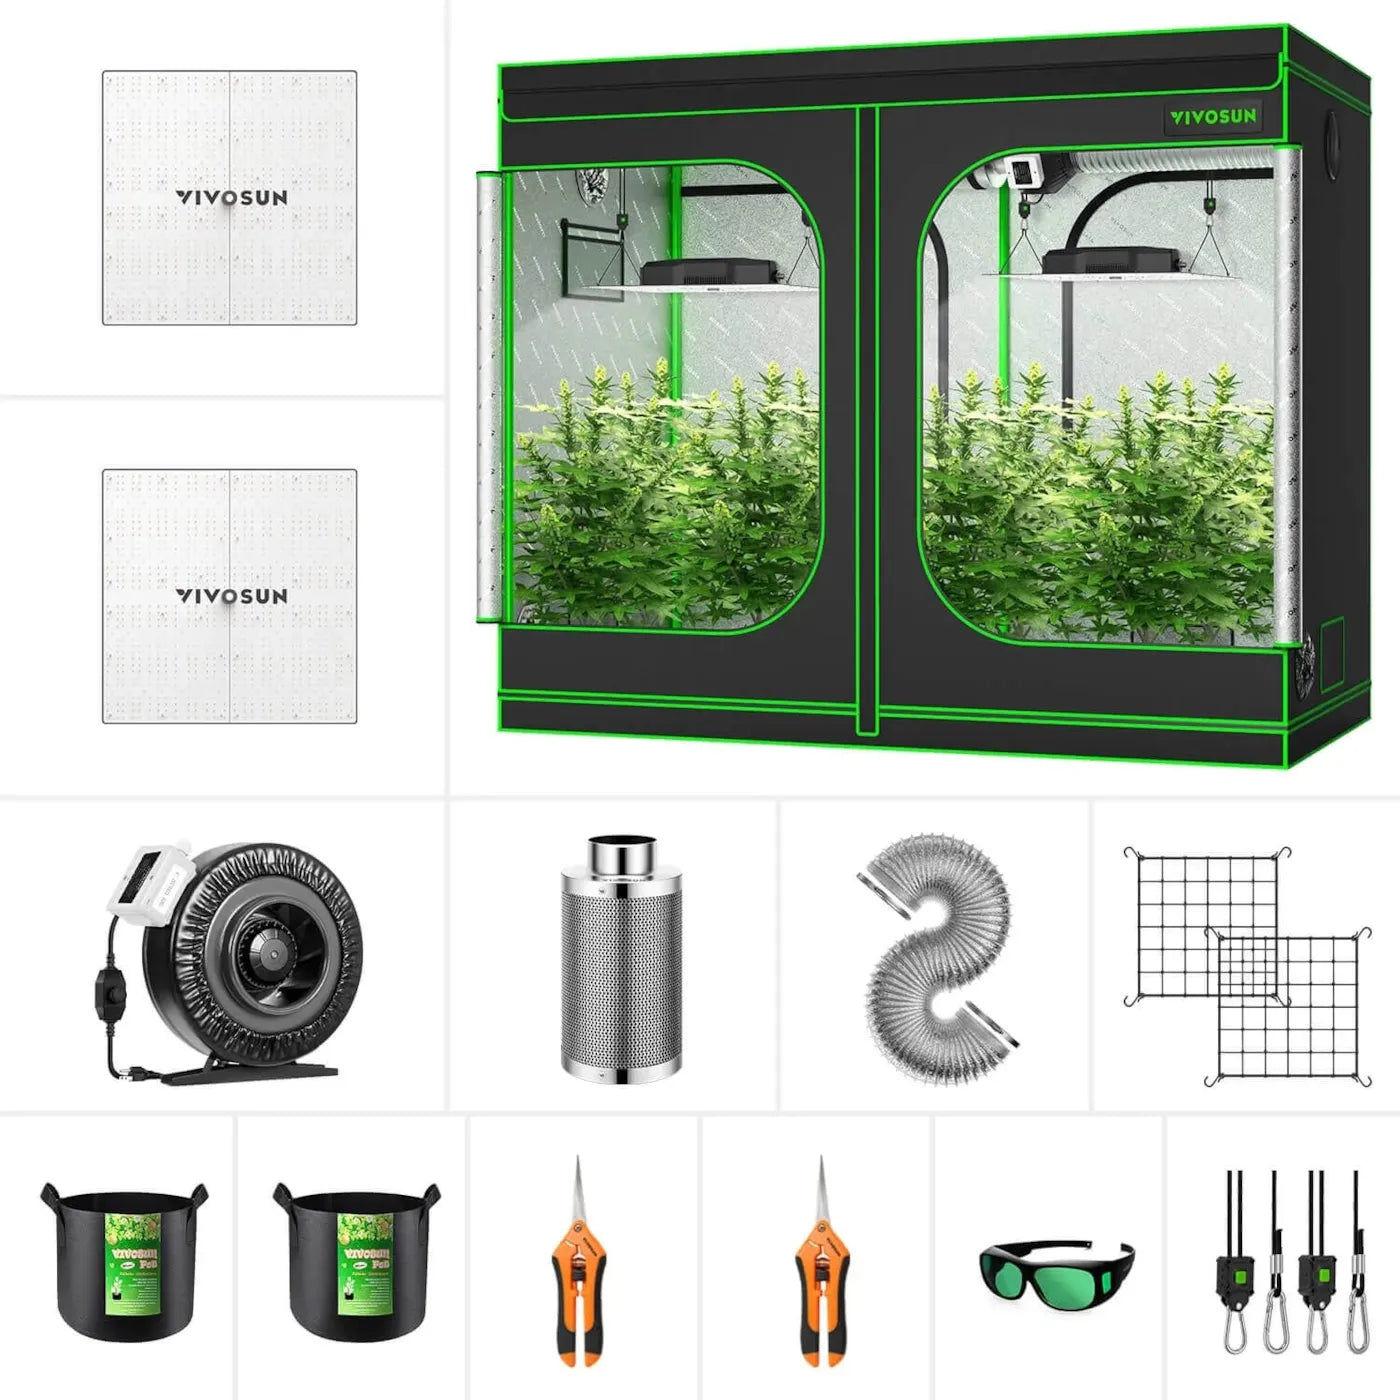 VIVOSUN GIY 8 x 4 ft. Complete Grow Kit with 2x VS4000 LED Grow Light, 96